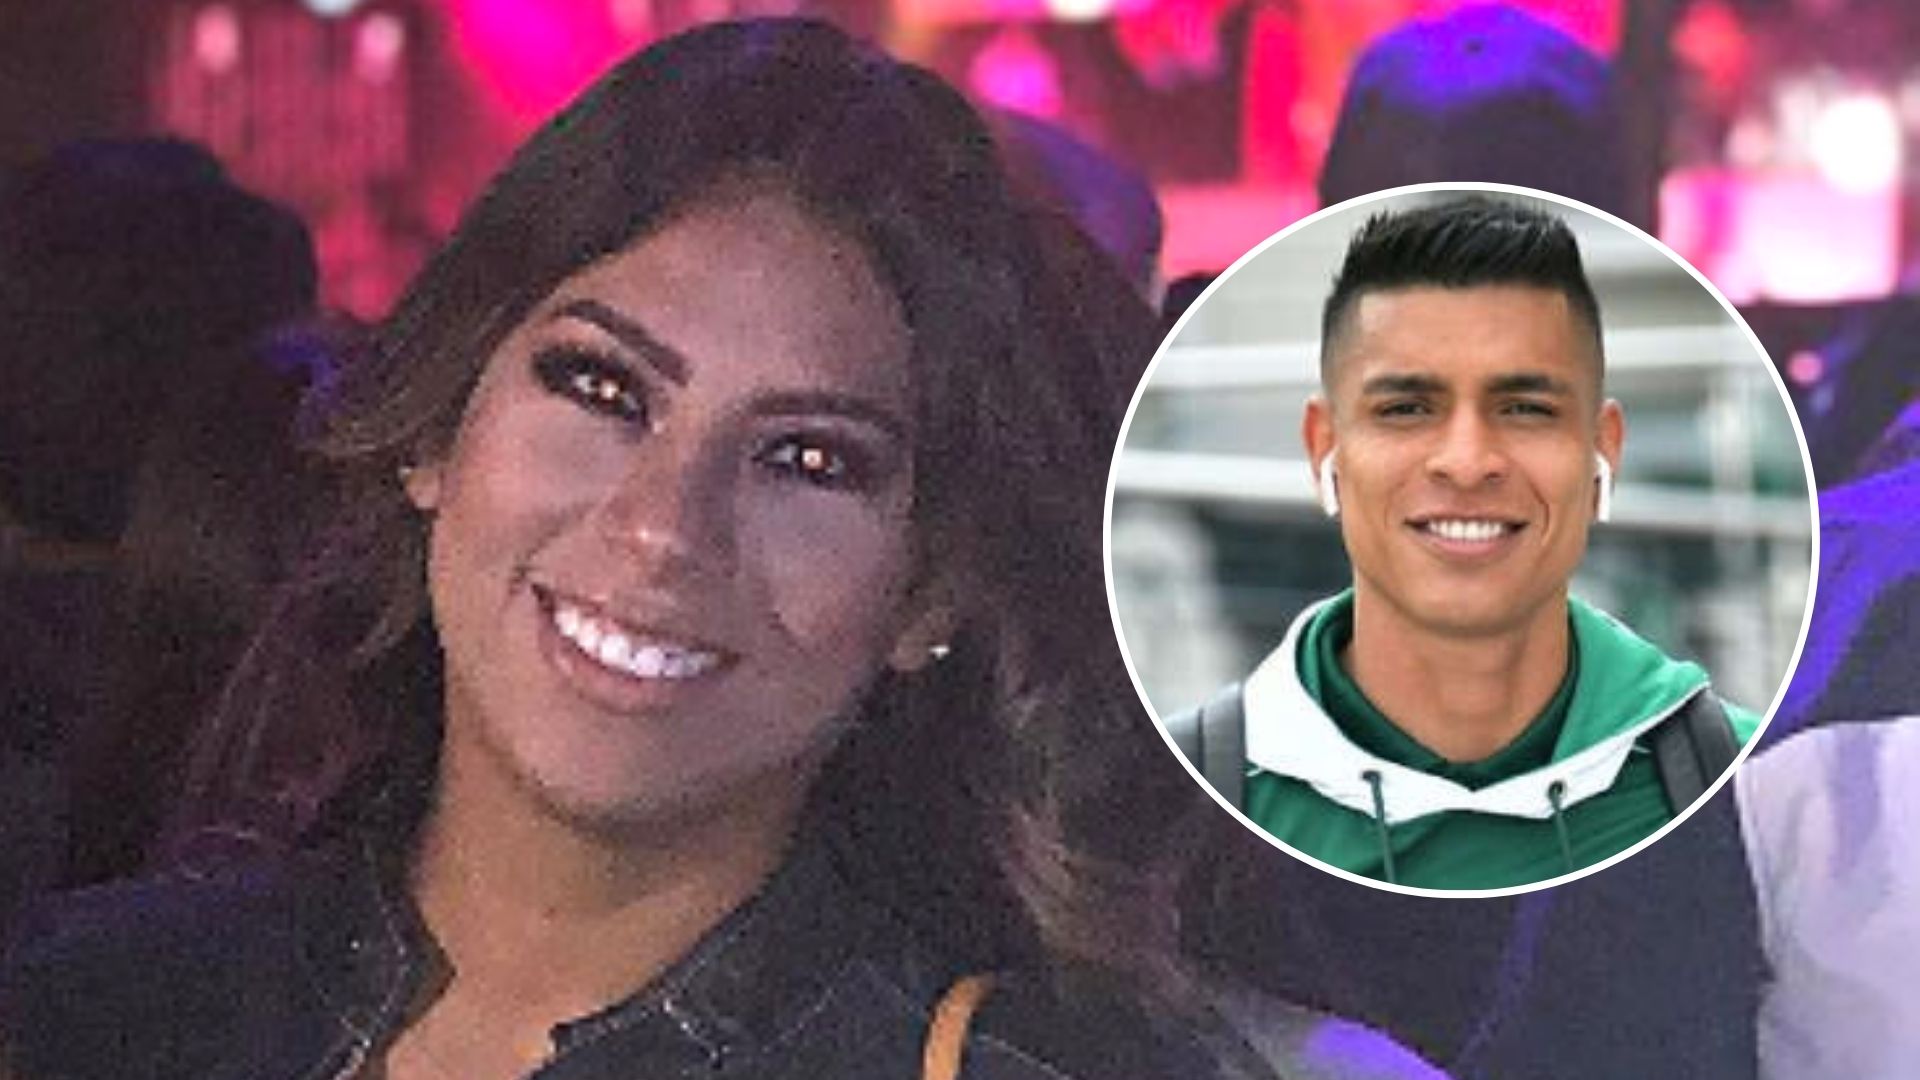 “Paolo Hurtado no te merece”: Rosa Fuentes es respaldada por las redes tras infidelidad del futbolista